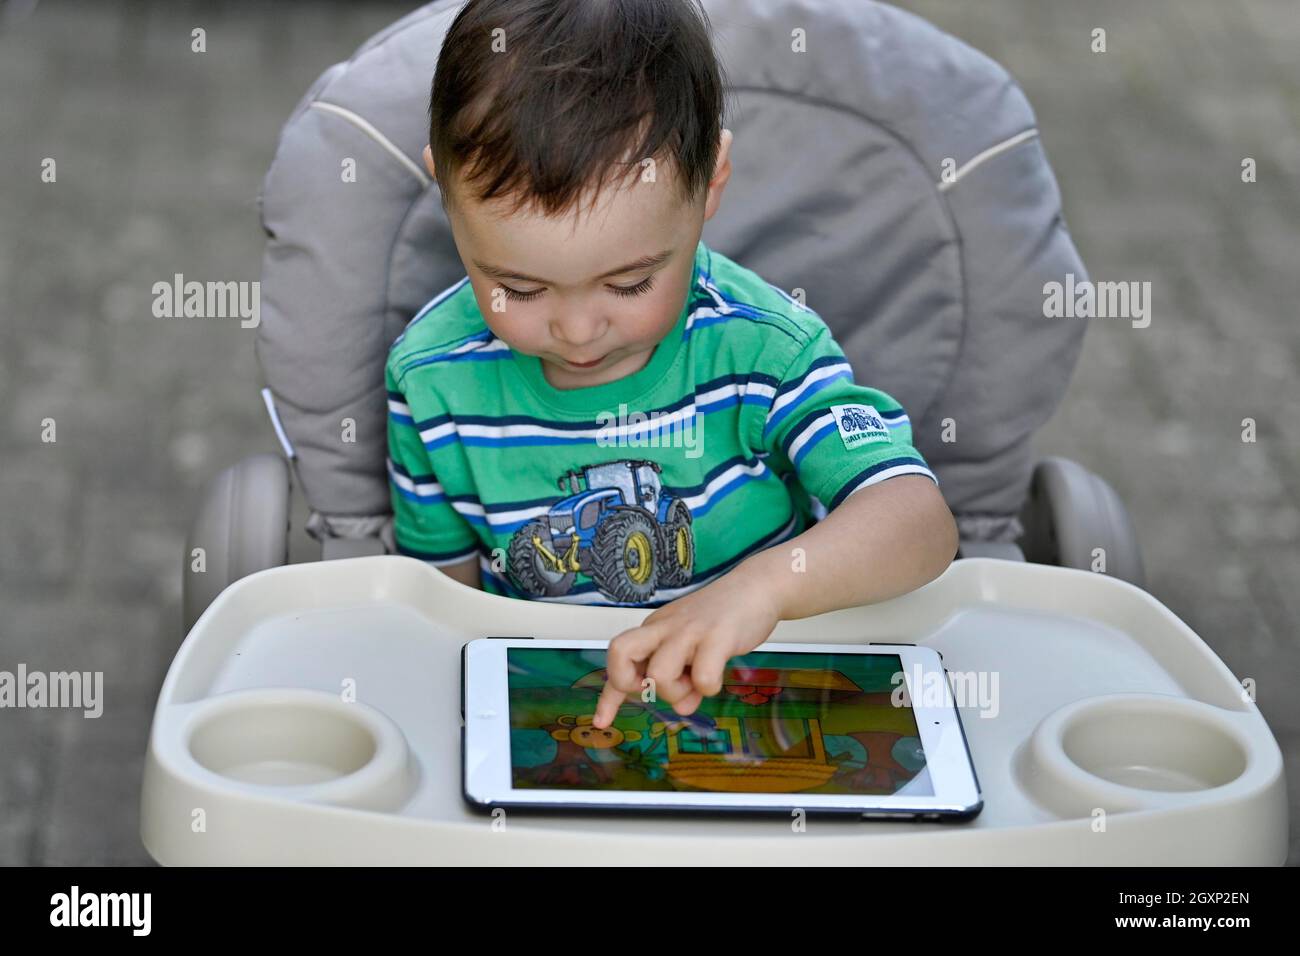 Tout-petit, 2 ans, multiethnique, eurasien, assis en chaise haute et jouant à un jeu éducatif sur tablette, Stuttgart, Baden-Wuerttemberg, Allemagne Banque D'Images